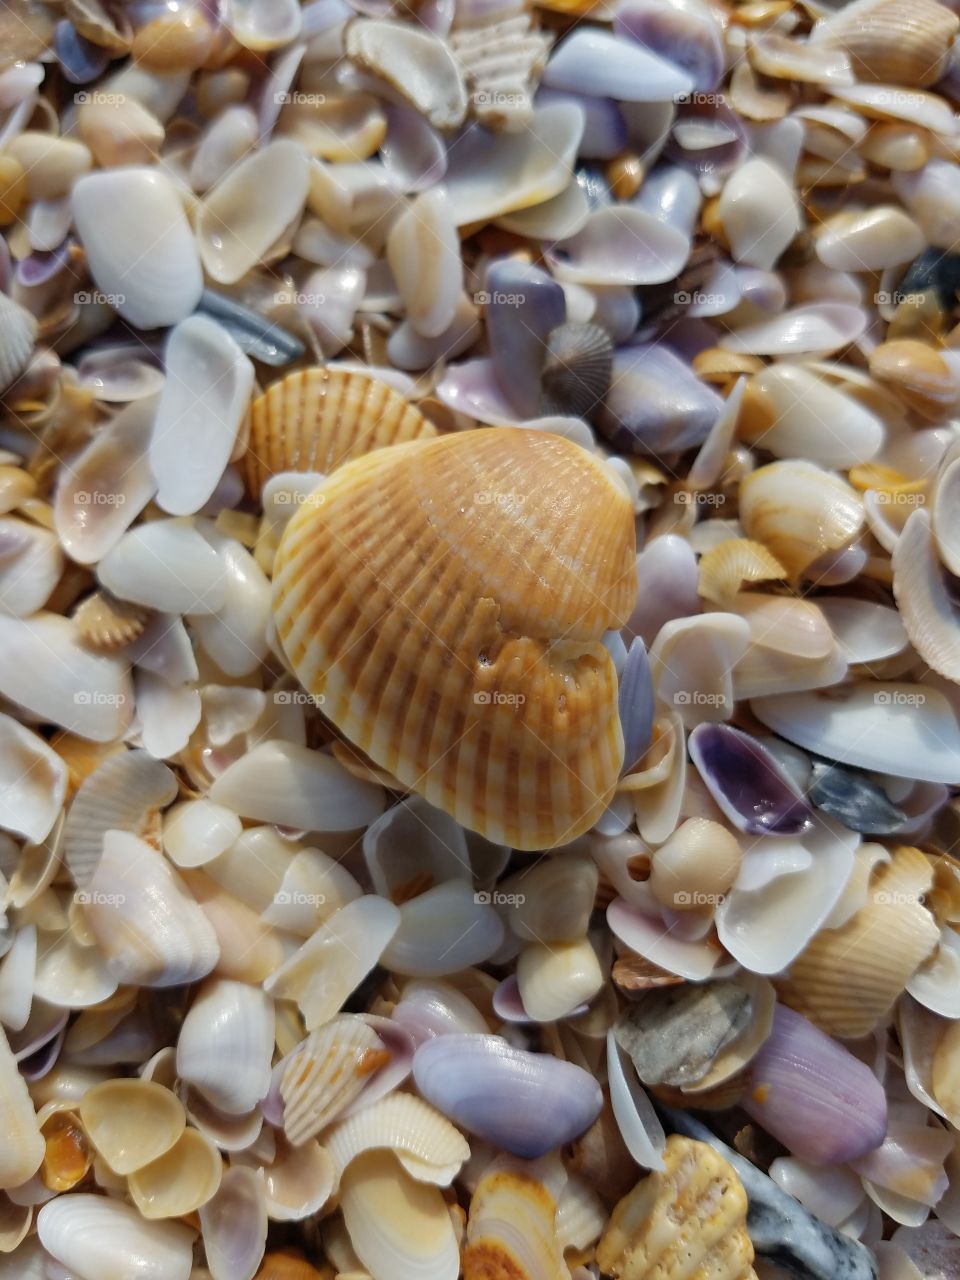 Large shell among many